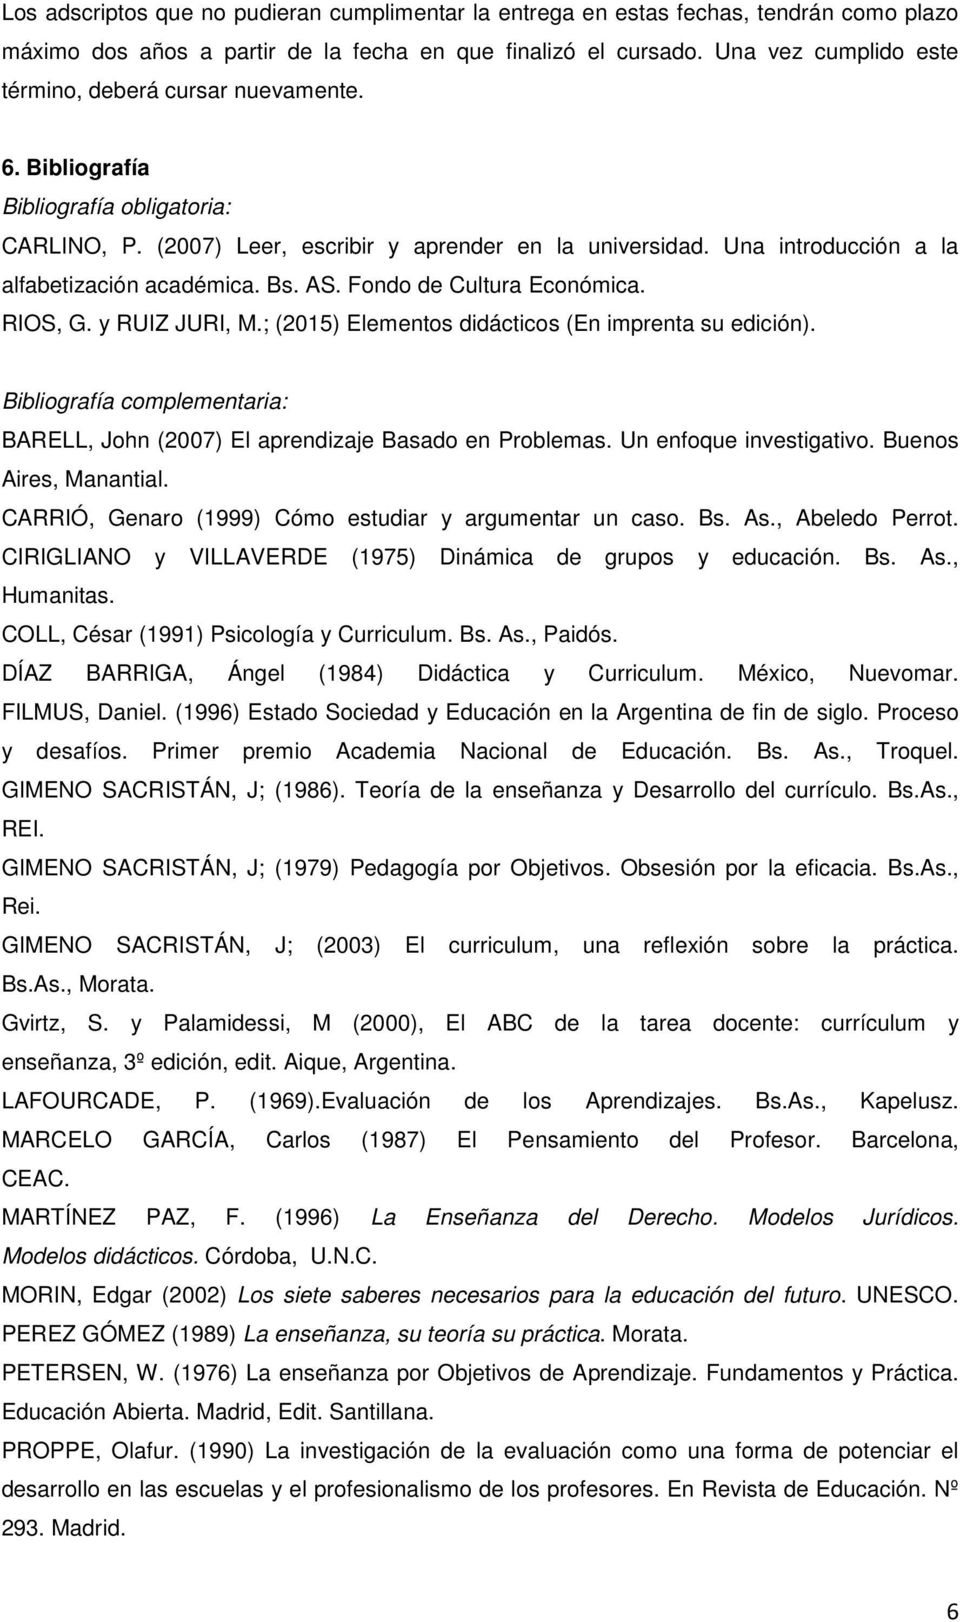 Fondo de Cultura Económica. RIOS, G. y RUIZ JURI, M.; (2015) Elementos didácticos (En imprenta su edición). Bibliografía complementaria: BARELL, John (2007) El aprendizaje Basado en Problemas.